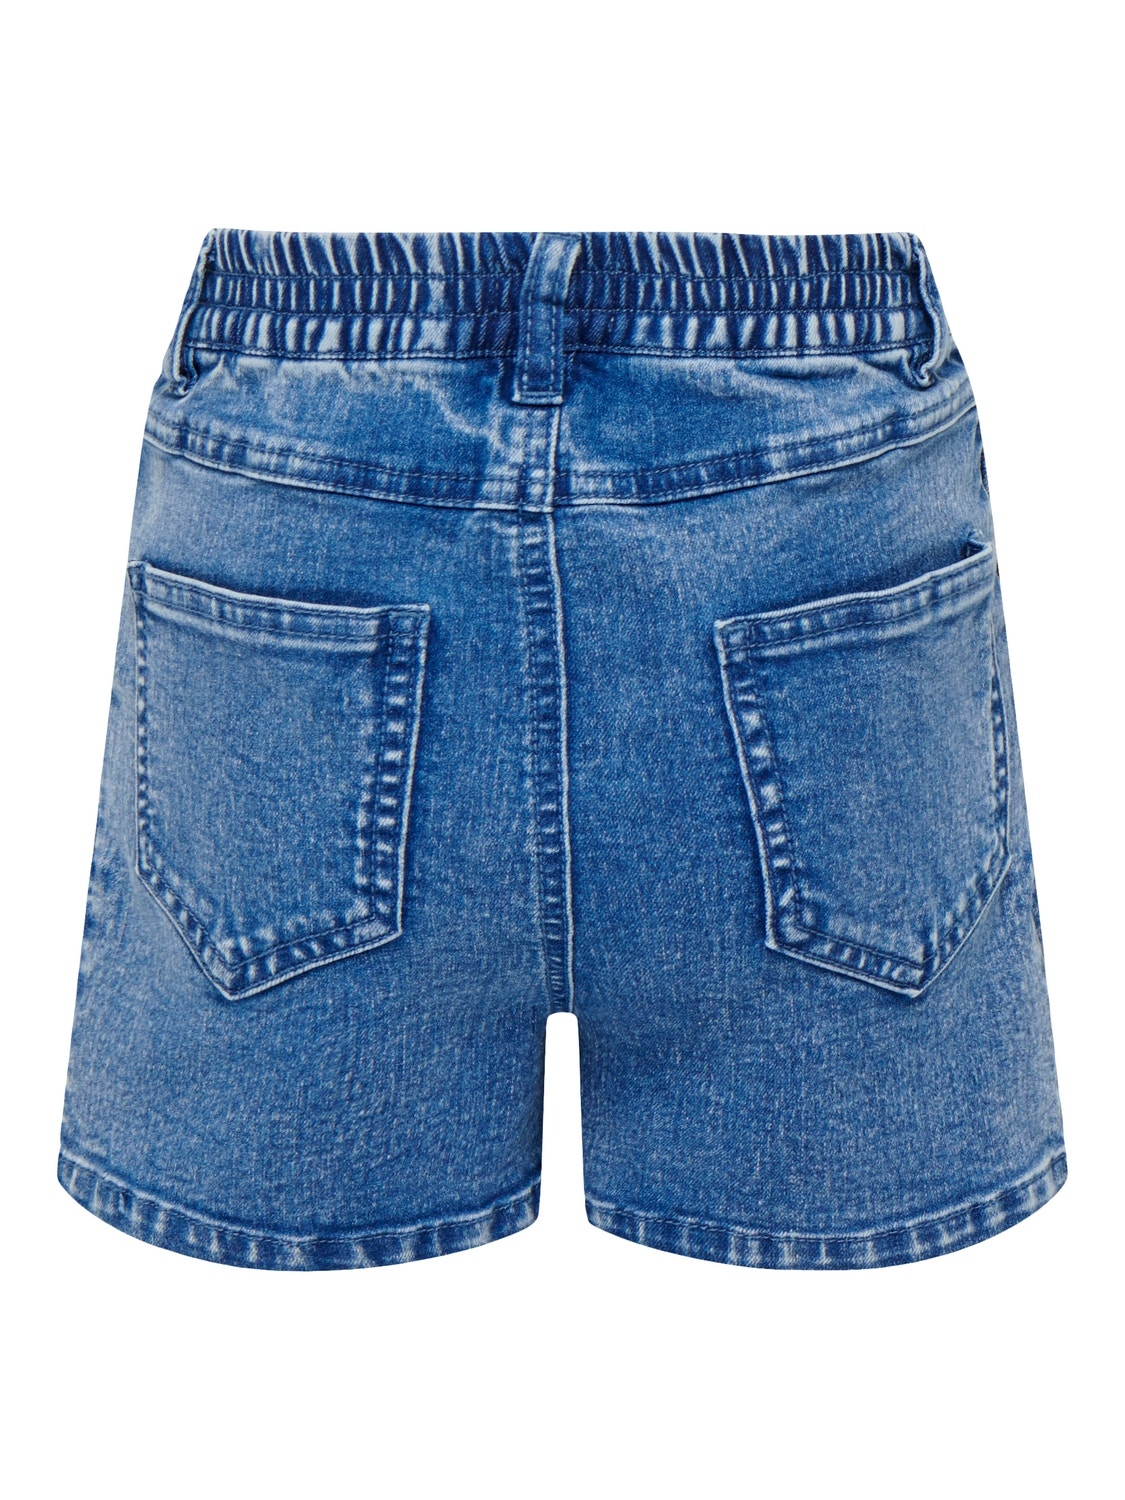 ONLY Shorts Skinny Fit -Medium Blue Denim - 15260697